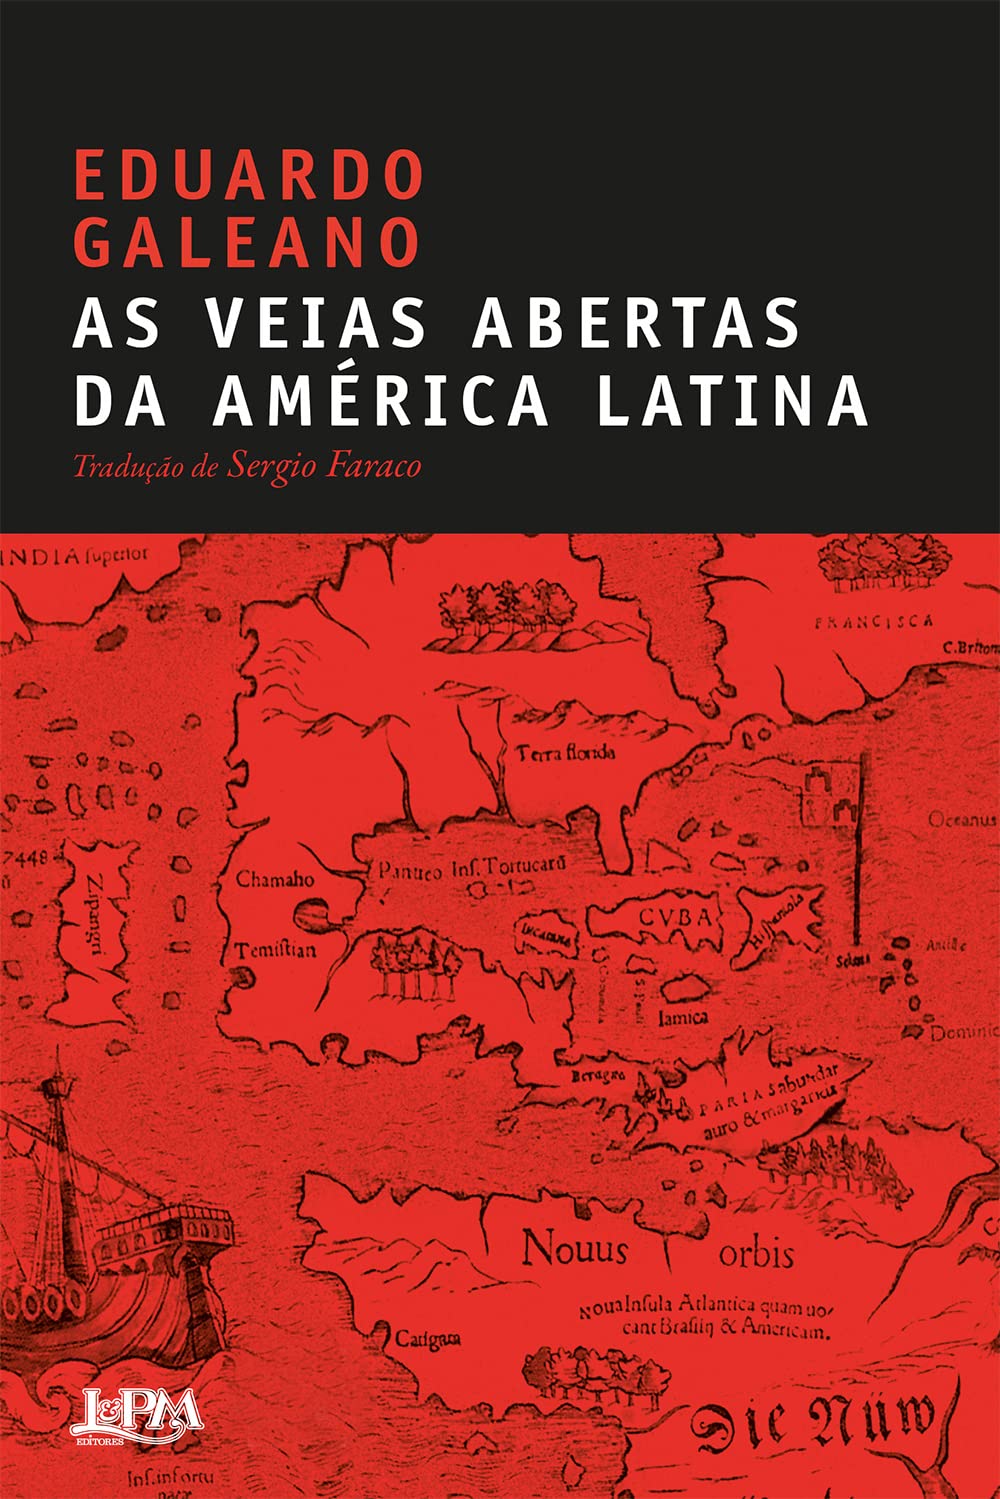 Eduardo Galeano: As Veias Abertas da América Latina (Paperback, Portuguese language, 1996, Paz e Terra)